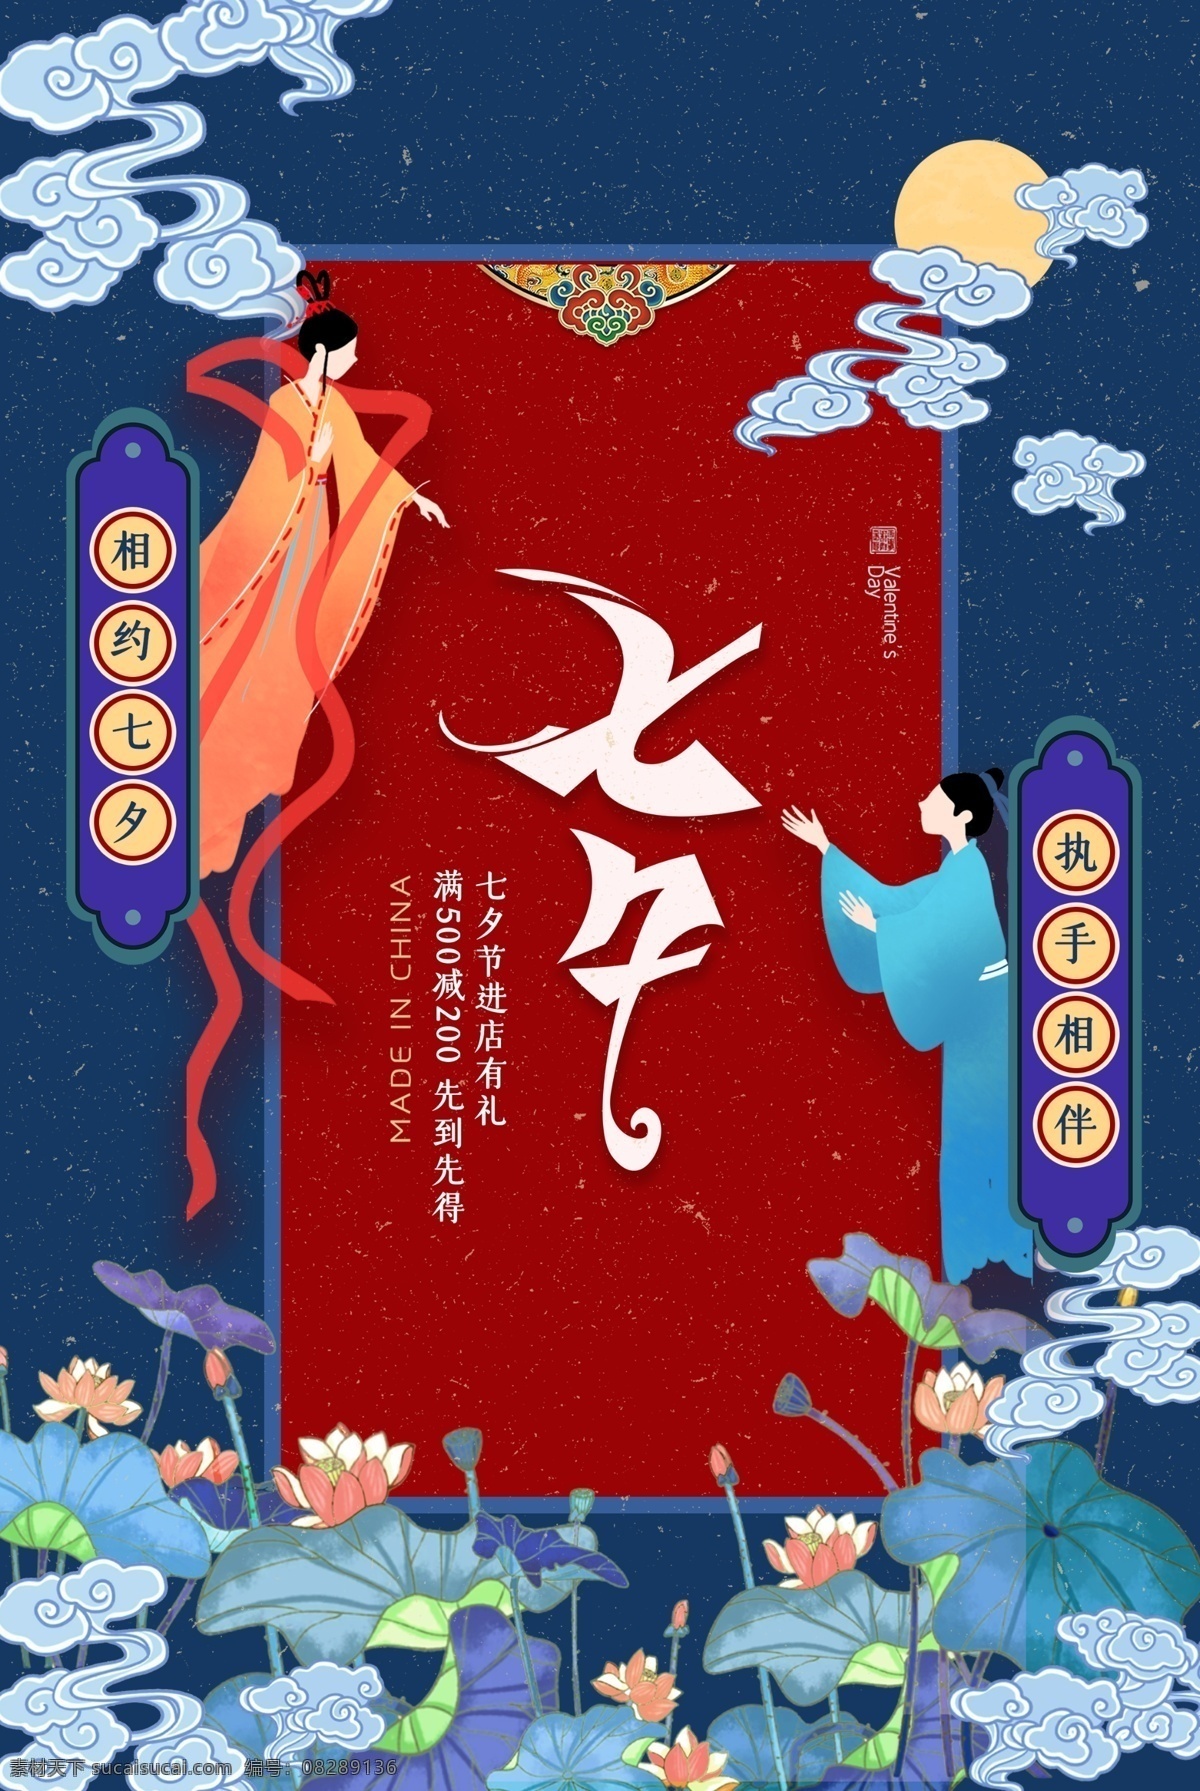 七夕 节日 传统 活动 促销 宣传海报 宣传 海报 传统节日